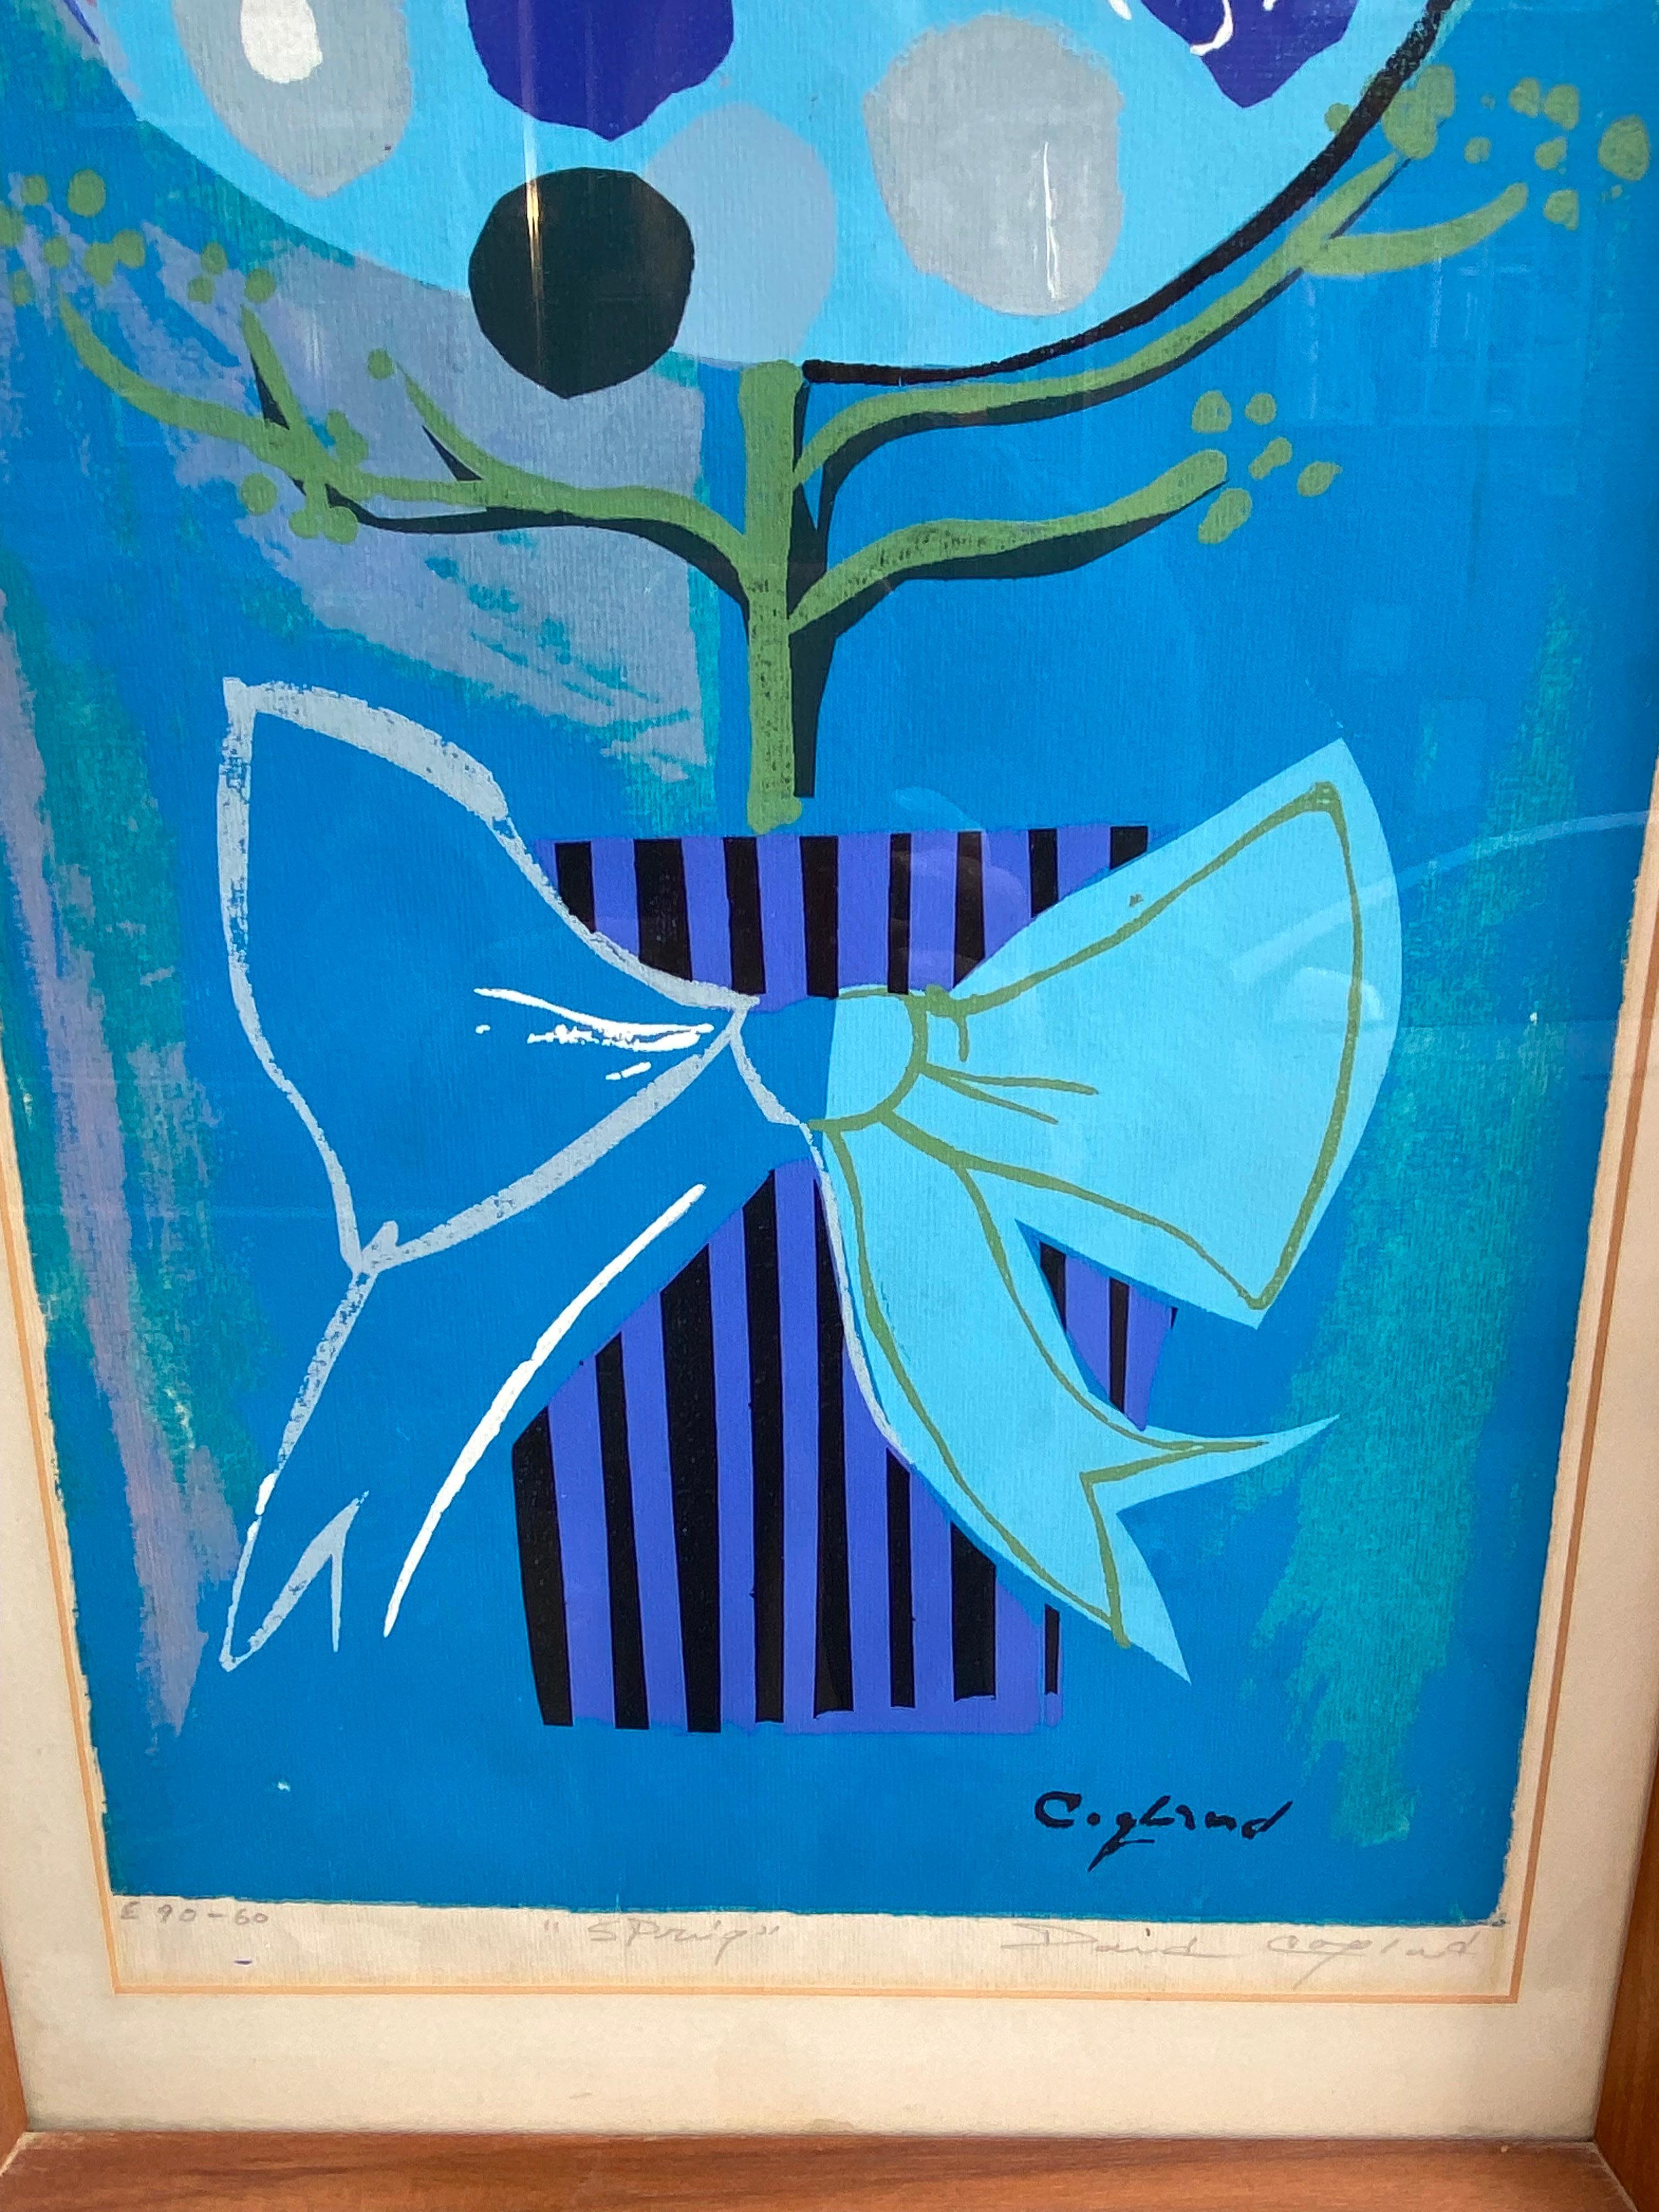 David Copeland Lithographie einer gestapelten Blume in einem Topf.  Tolle 60er-Jahre-Atmosphäre mit wirklich schönen Blautönen!  In gutem Zustand!  Sieht aus wie ein Originalrahmen!